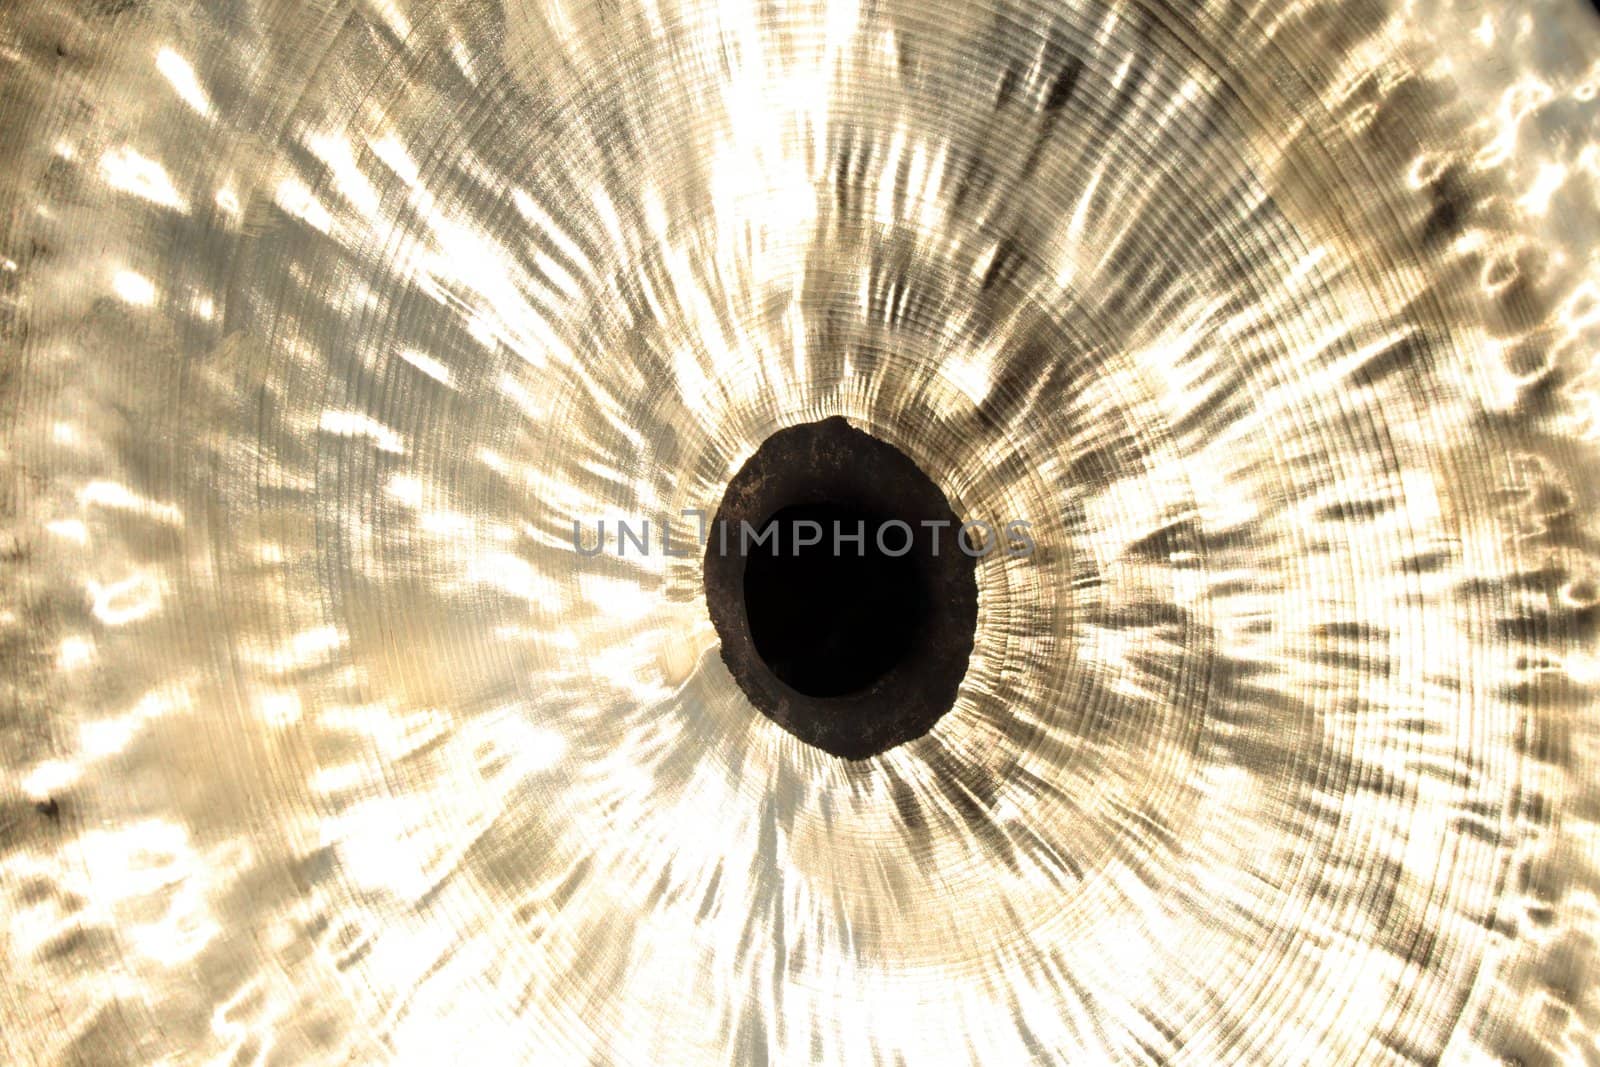 Chinese cymbal: shiny metallic texture by anikasalsera